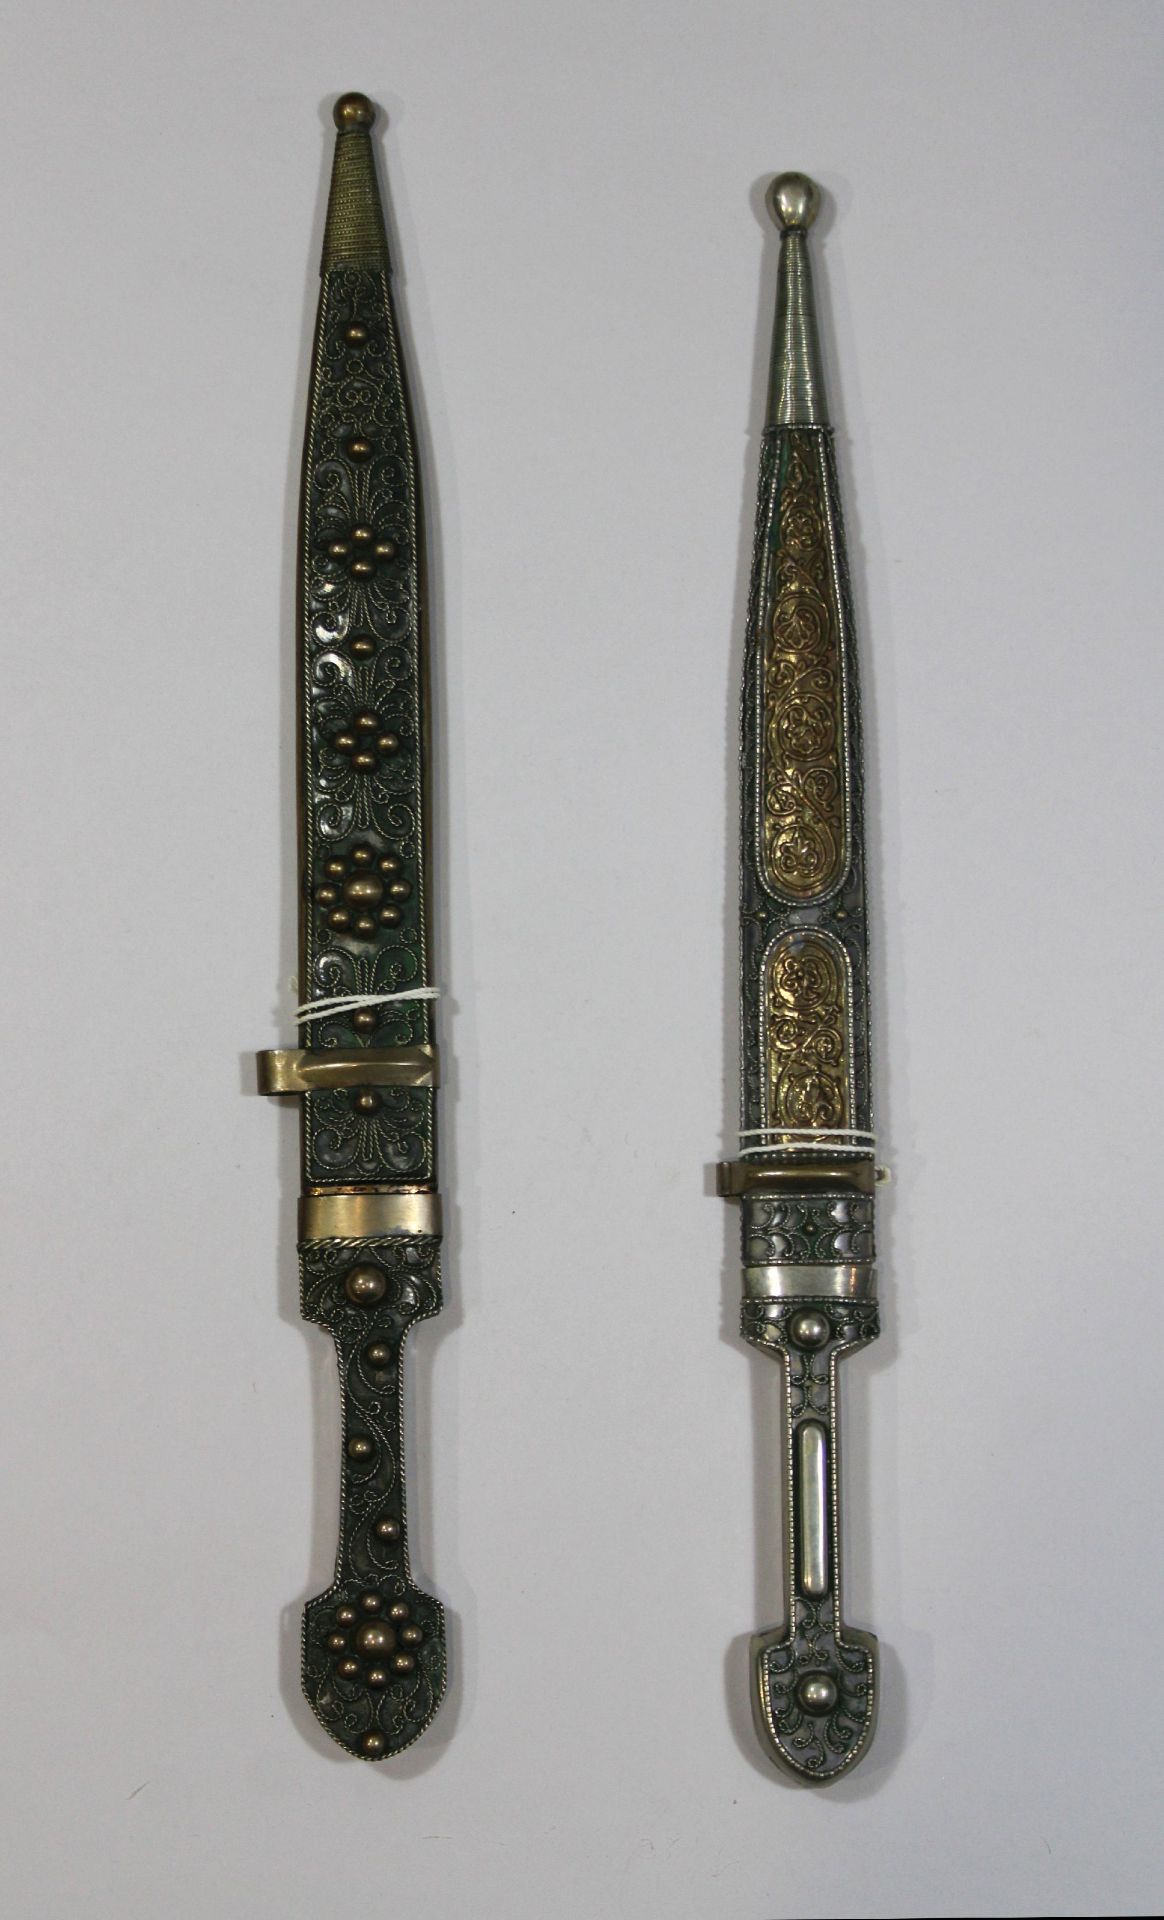 Zwei kaukasische Schwerter mit dekorierten Scheiden und Griffen, Klingenlänge: vom 26 bis 28 cm, - Image 2 of 2